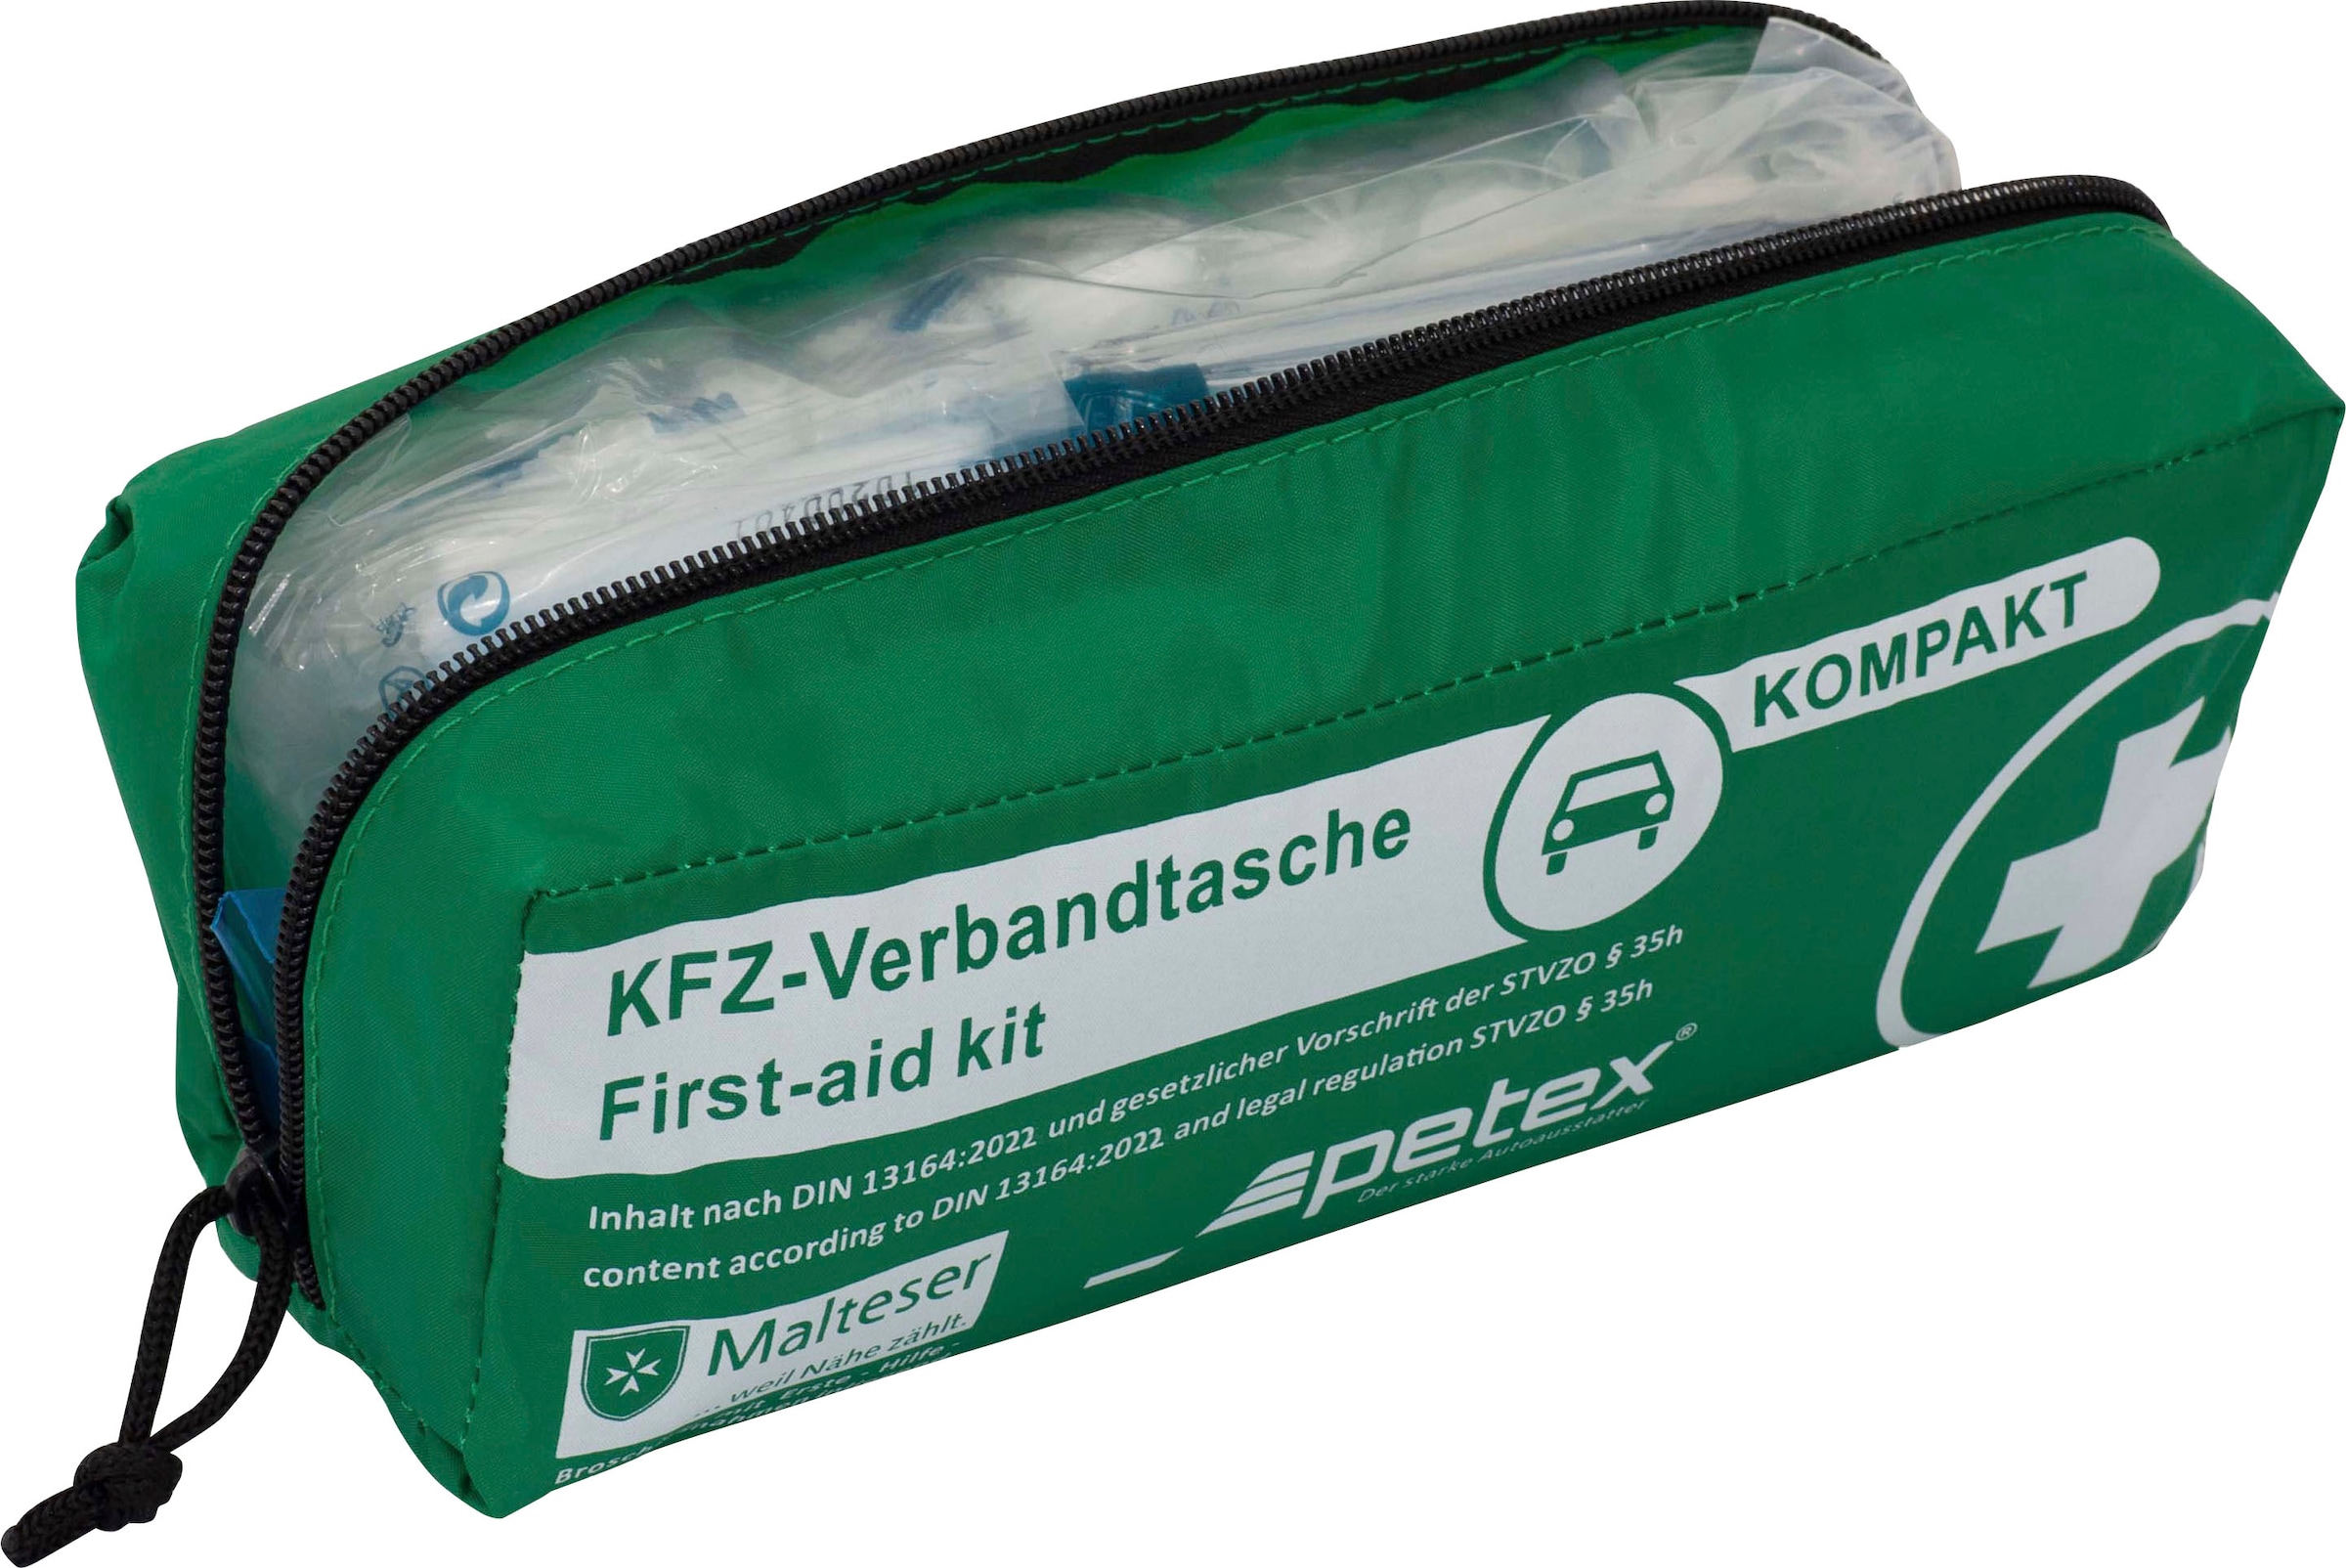 Petex KFZ-Verbandtasche »Kompakt«, mit Inhalt nach DIN 13164:2022